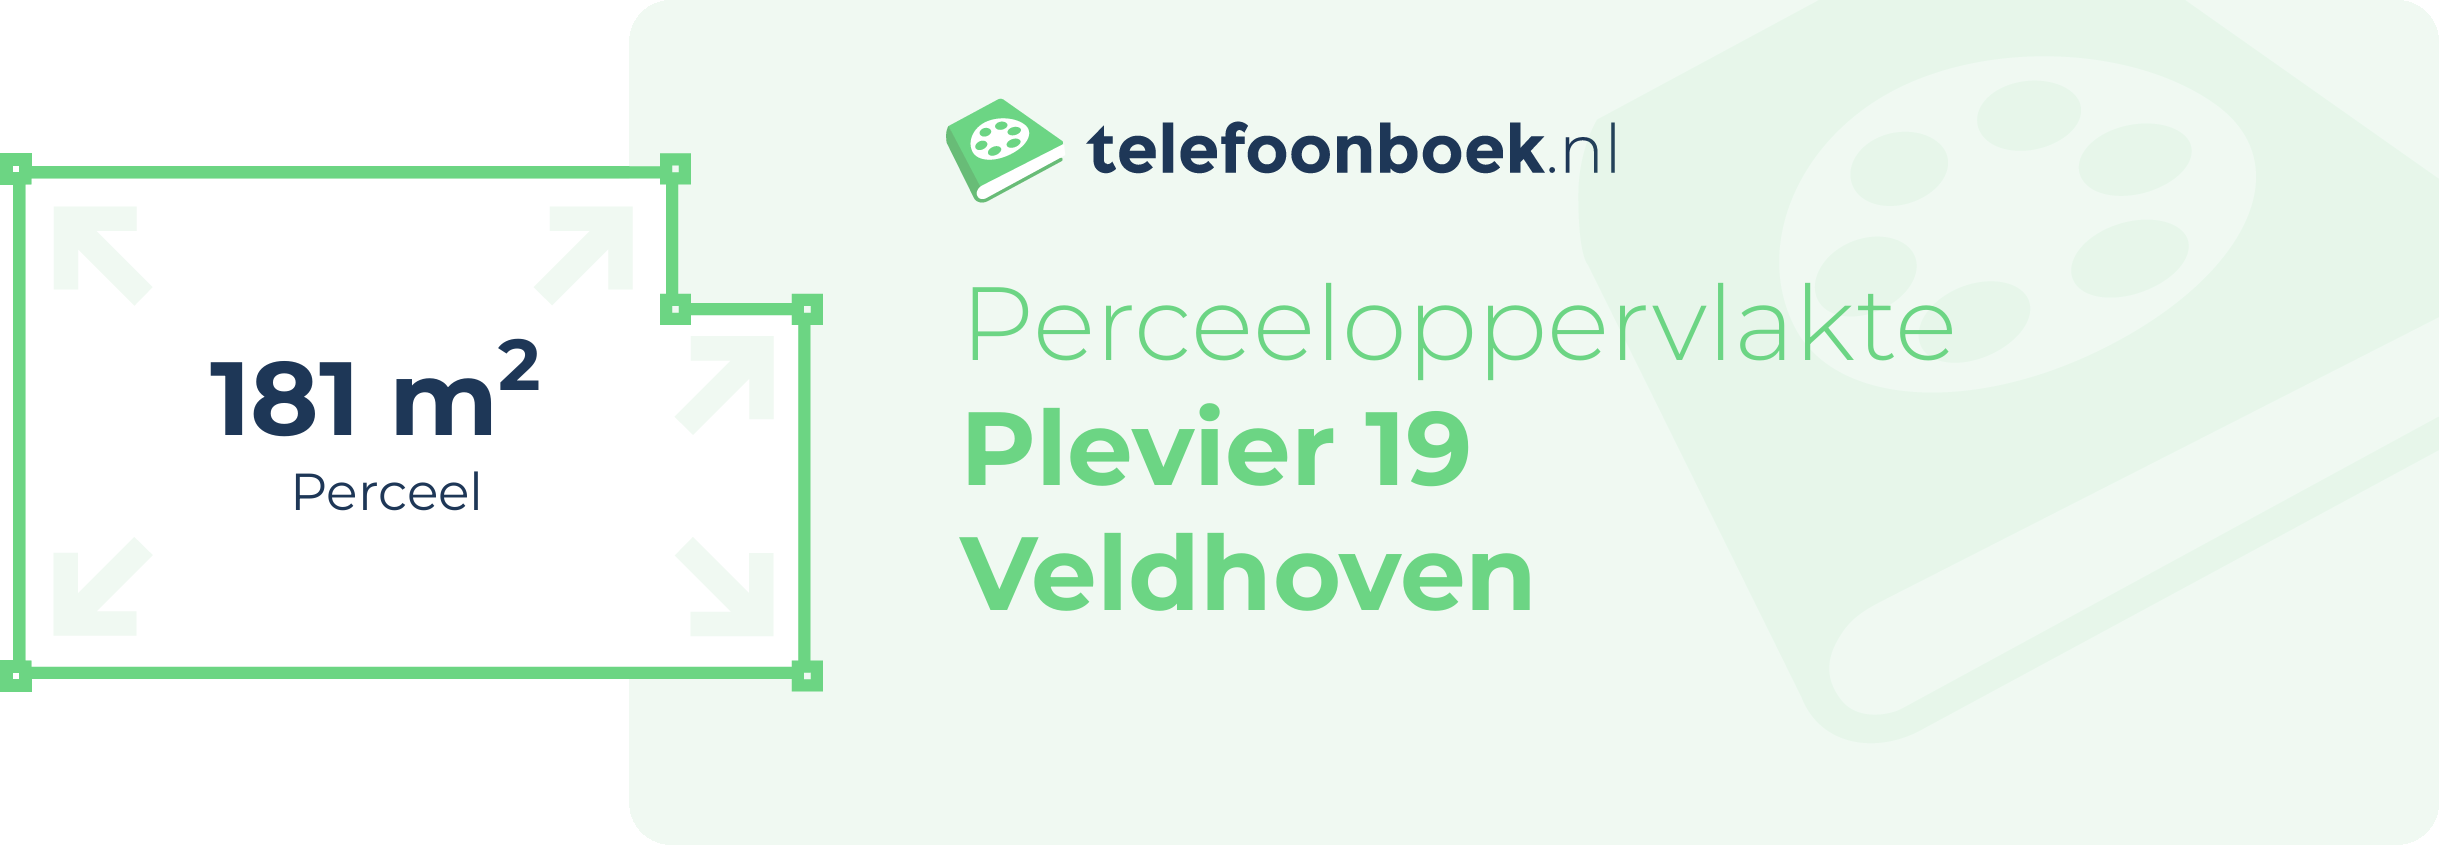 Perceeloppervlakte Plevier 19 Veldhoven